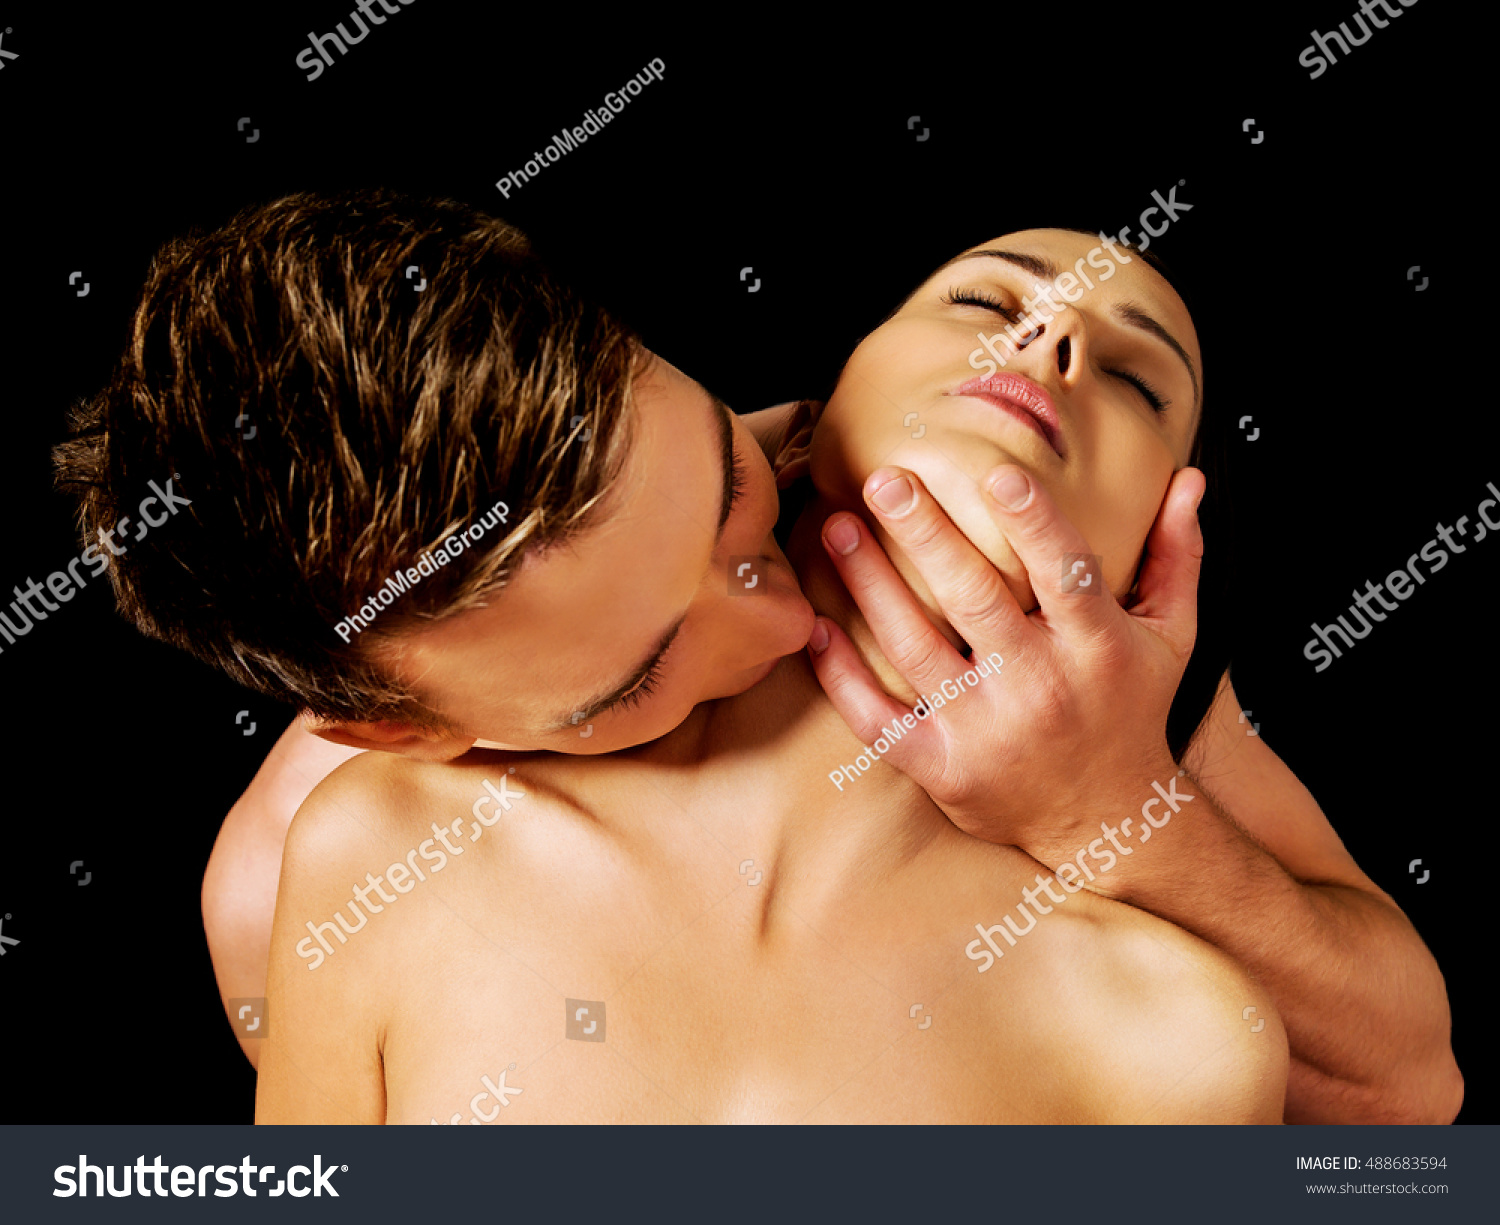 к чему снятся что целуют грудь (120) фото